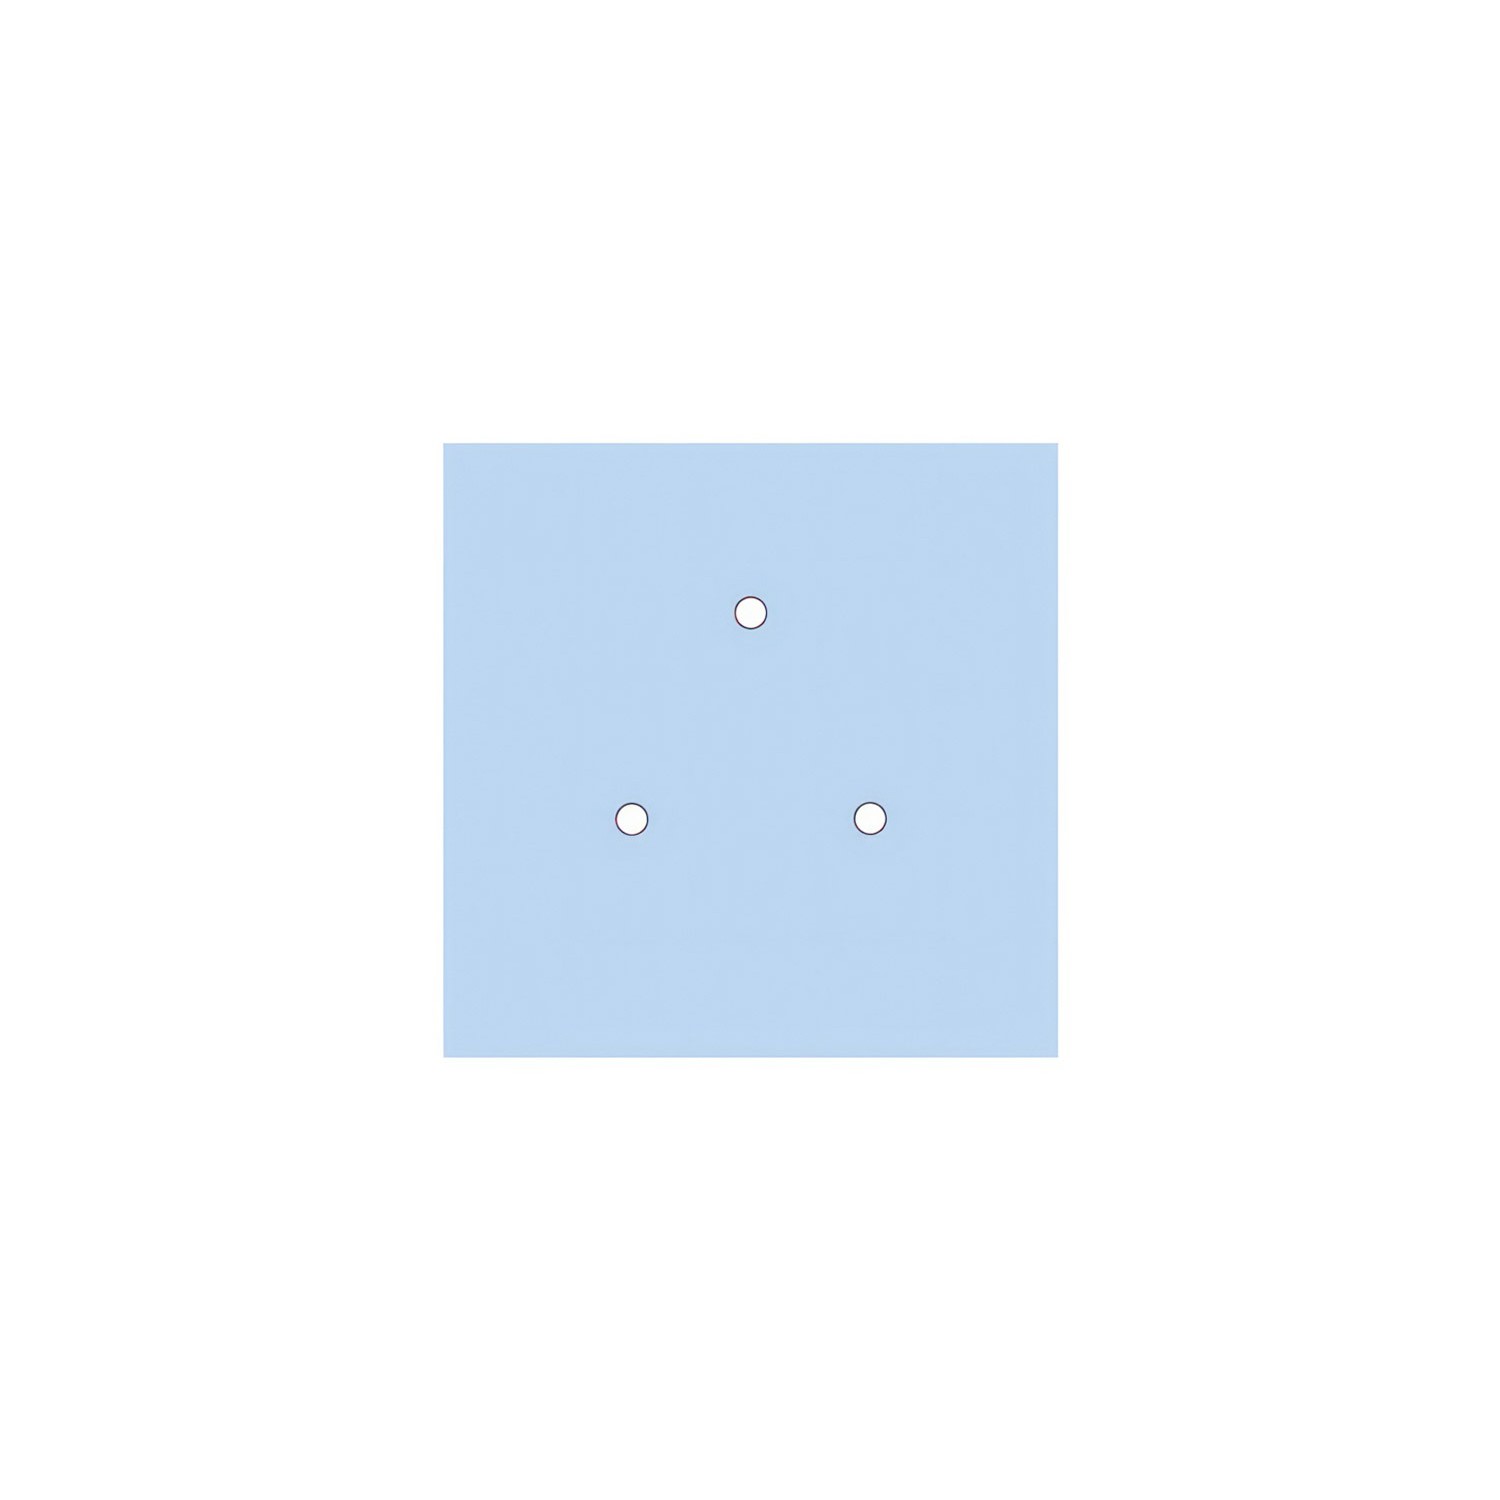 Komplett 200mm takkopp Rose-One System kvadrat - 3 hål (i triangel) och 4 hål i sidled